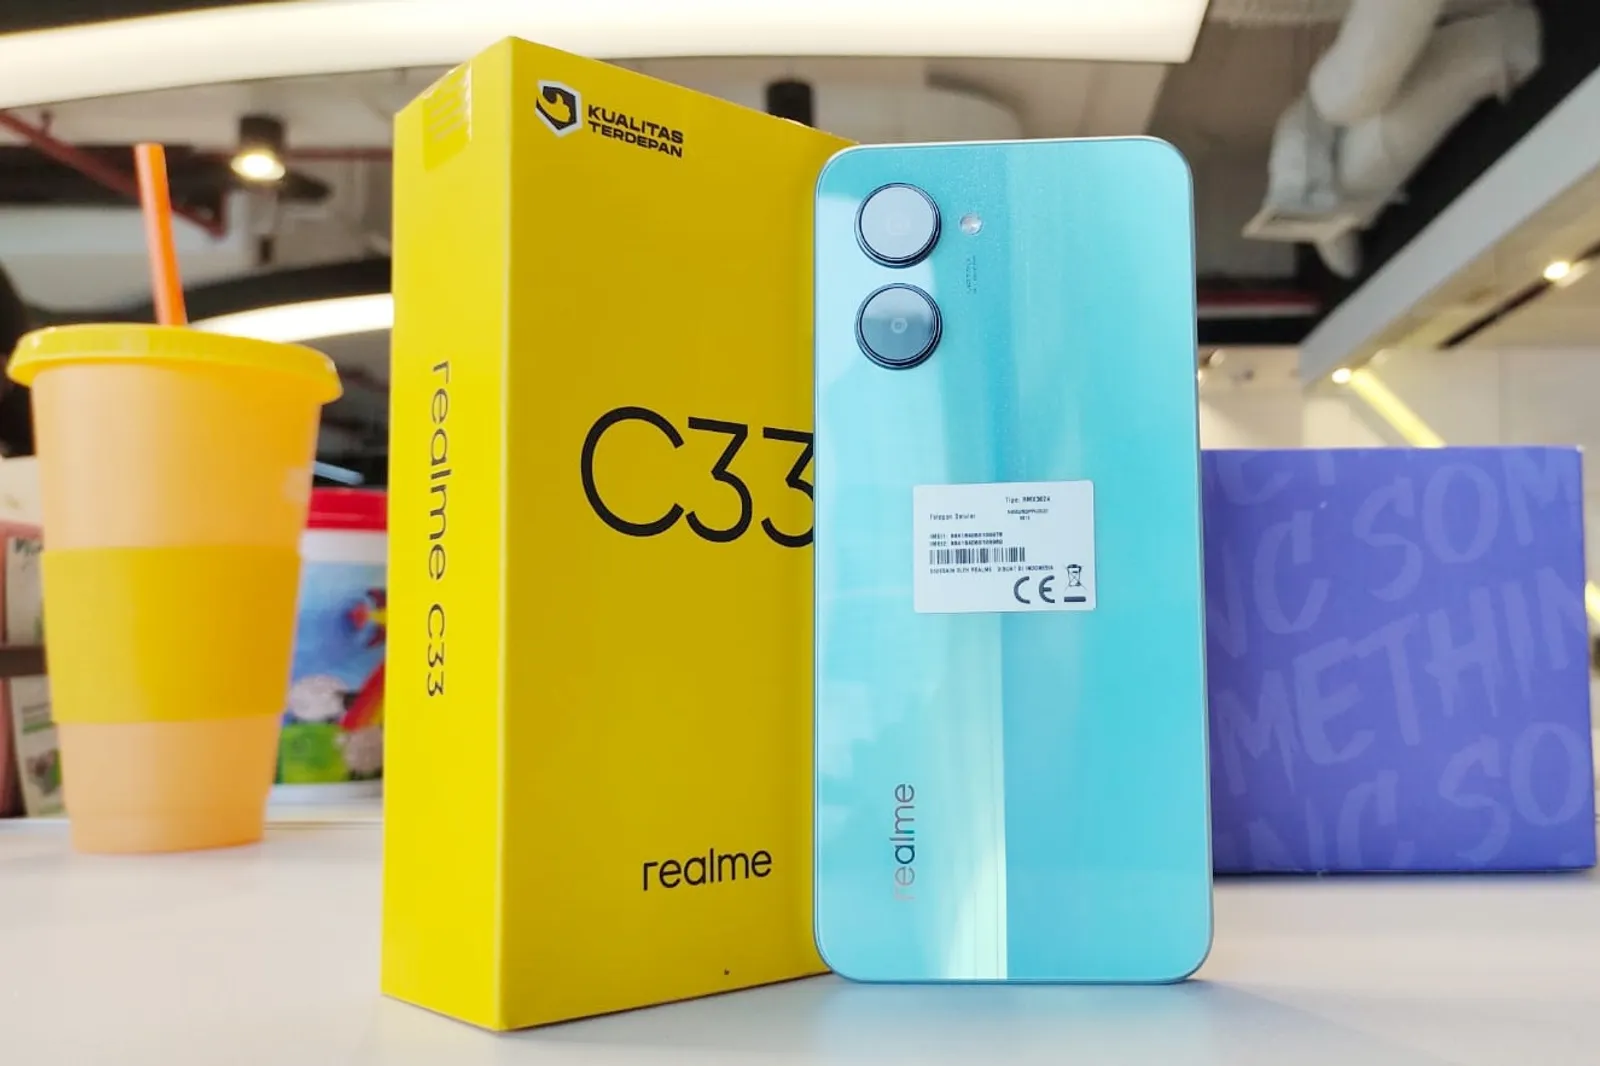 Review: realme C33 Ponsel Cantik dengan Kamera Ciamik